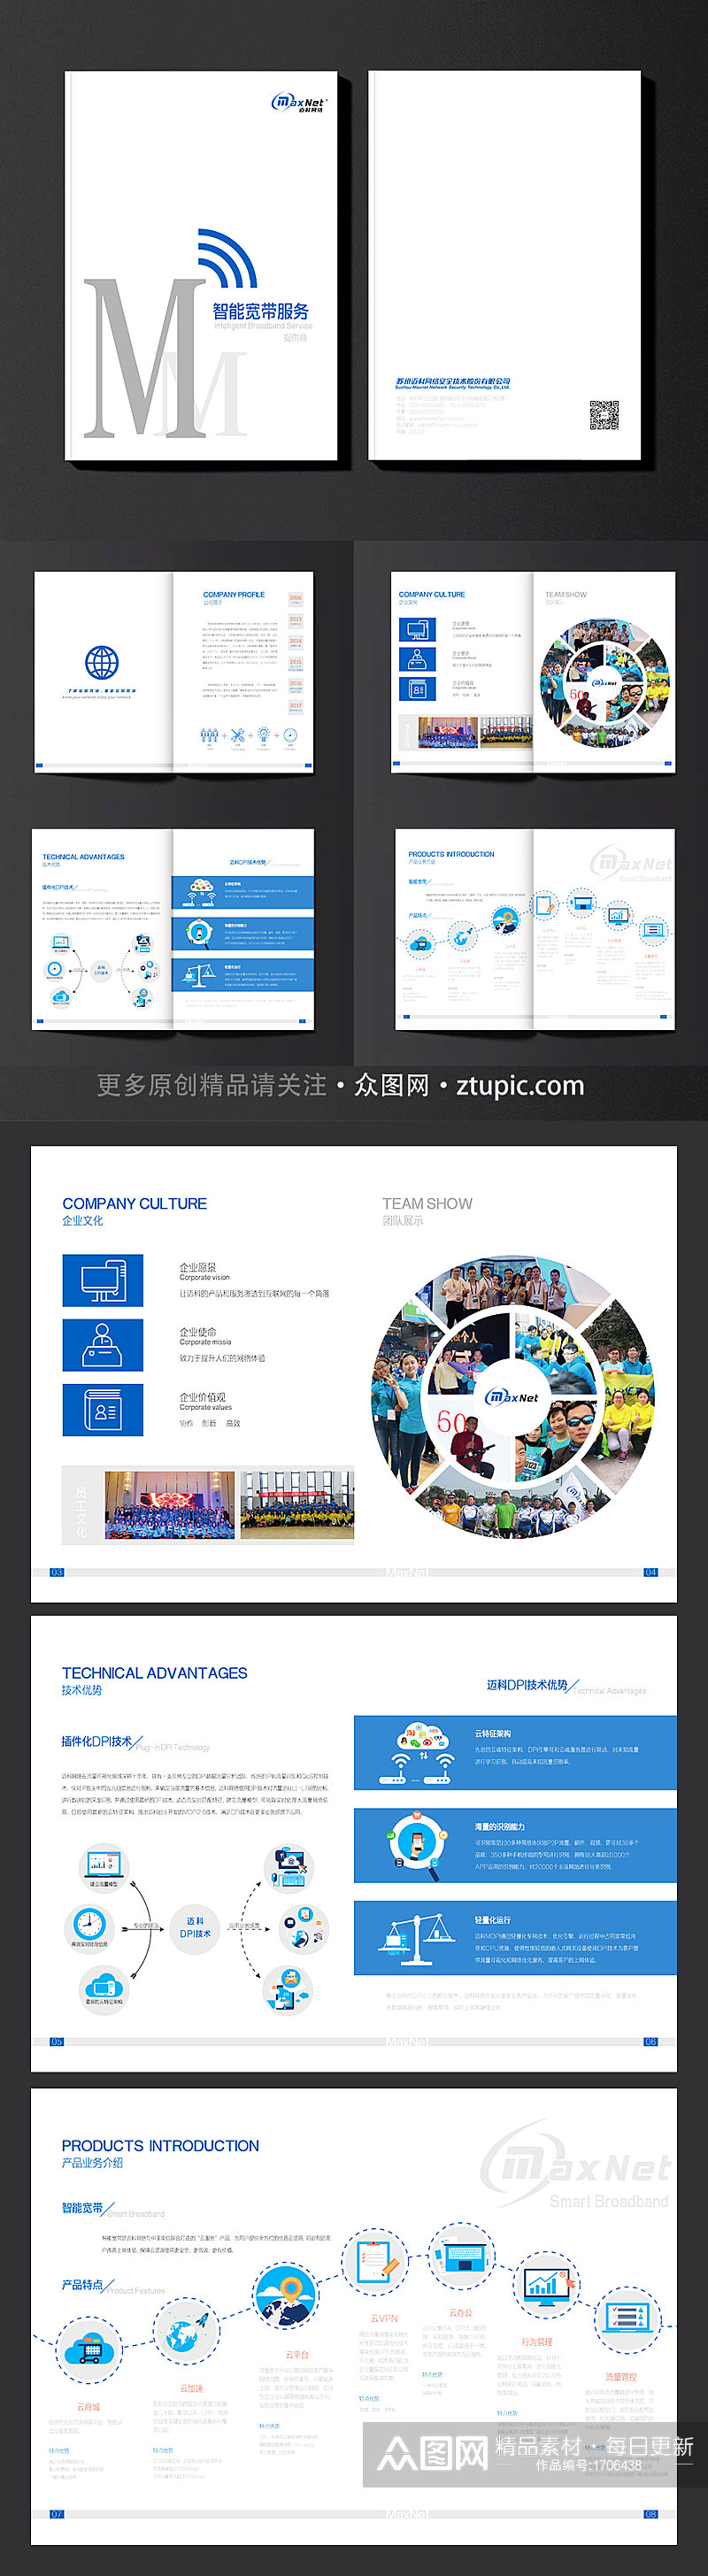 大气蓝色商务公司集科技企业宣传册企业画册素材